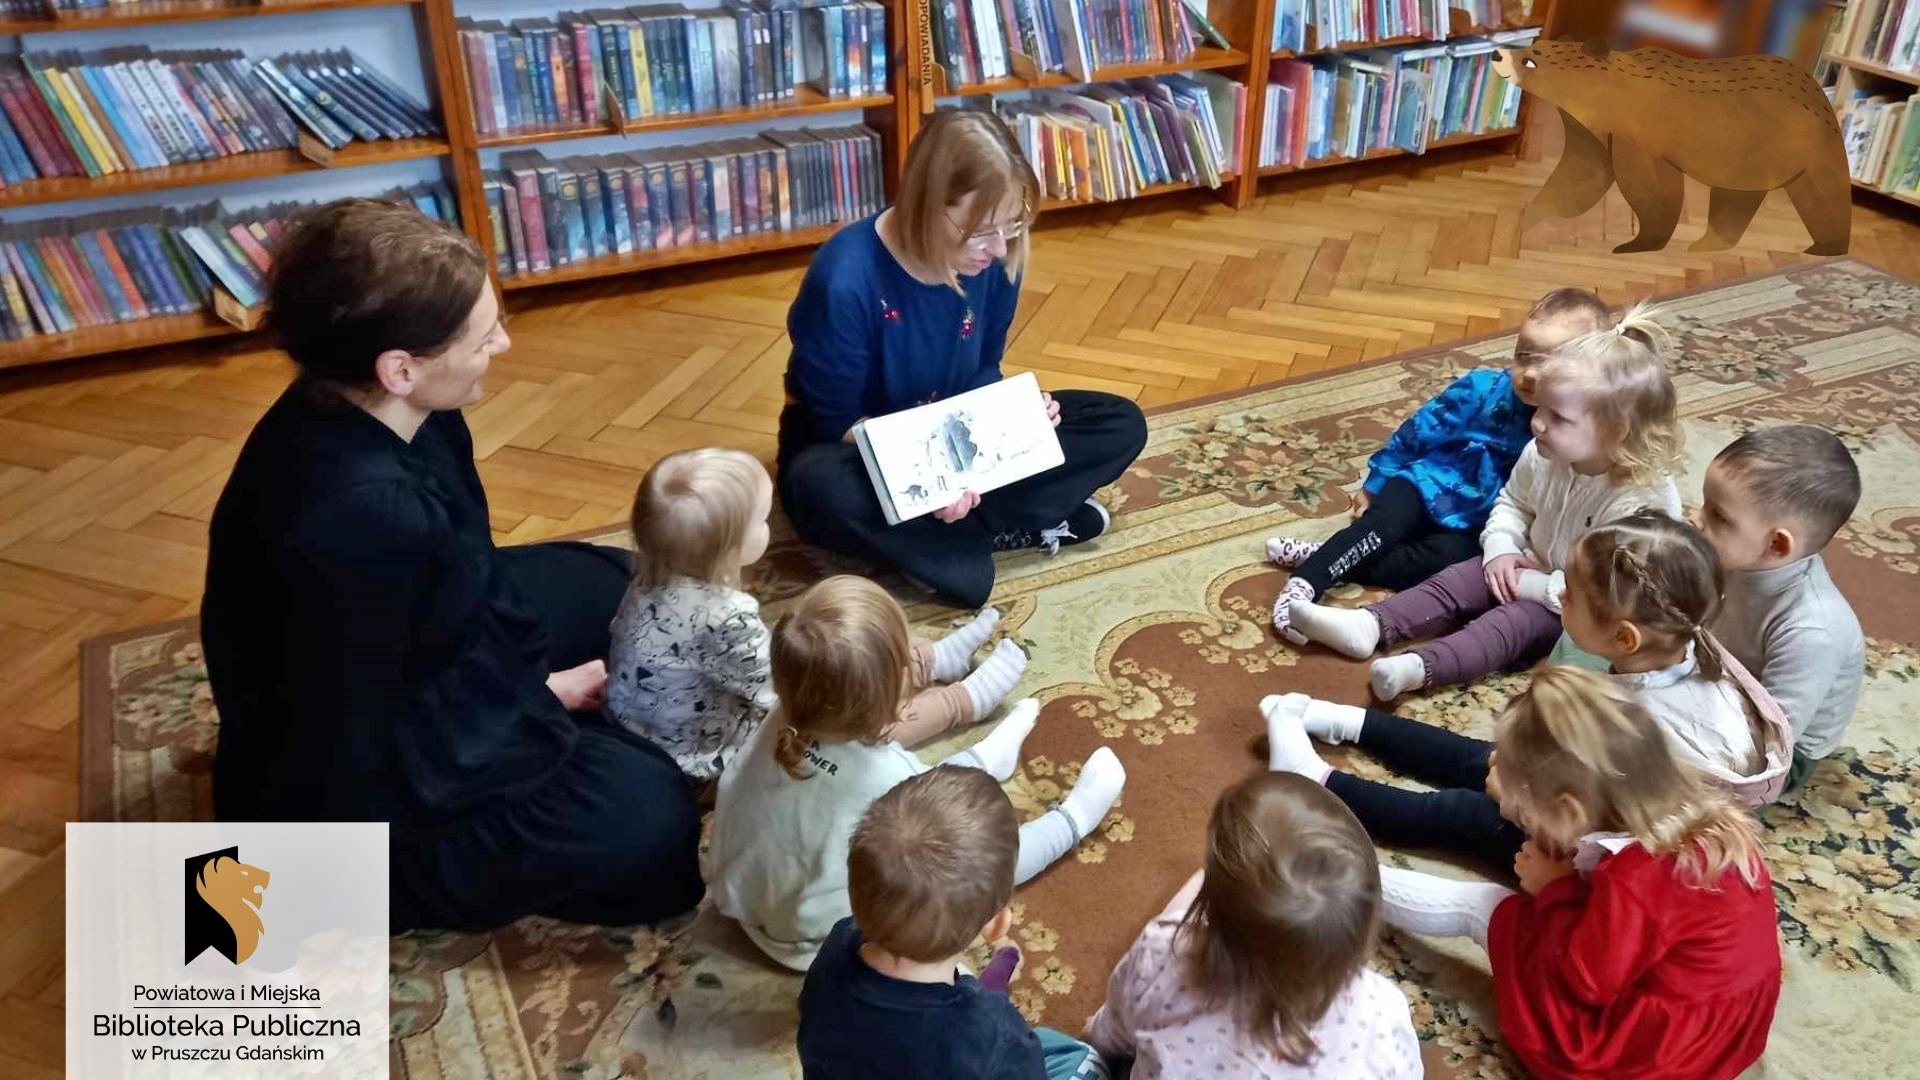 W kółku siedzą malutkie dzieci i nauczycielka. Między dziećmi siedzi bibliotekarka, która czyta książkę i pokazuje ilustracje.